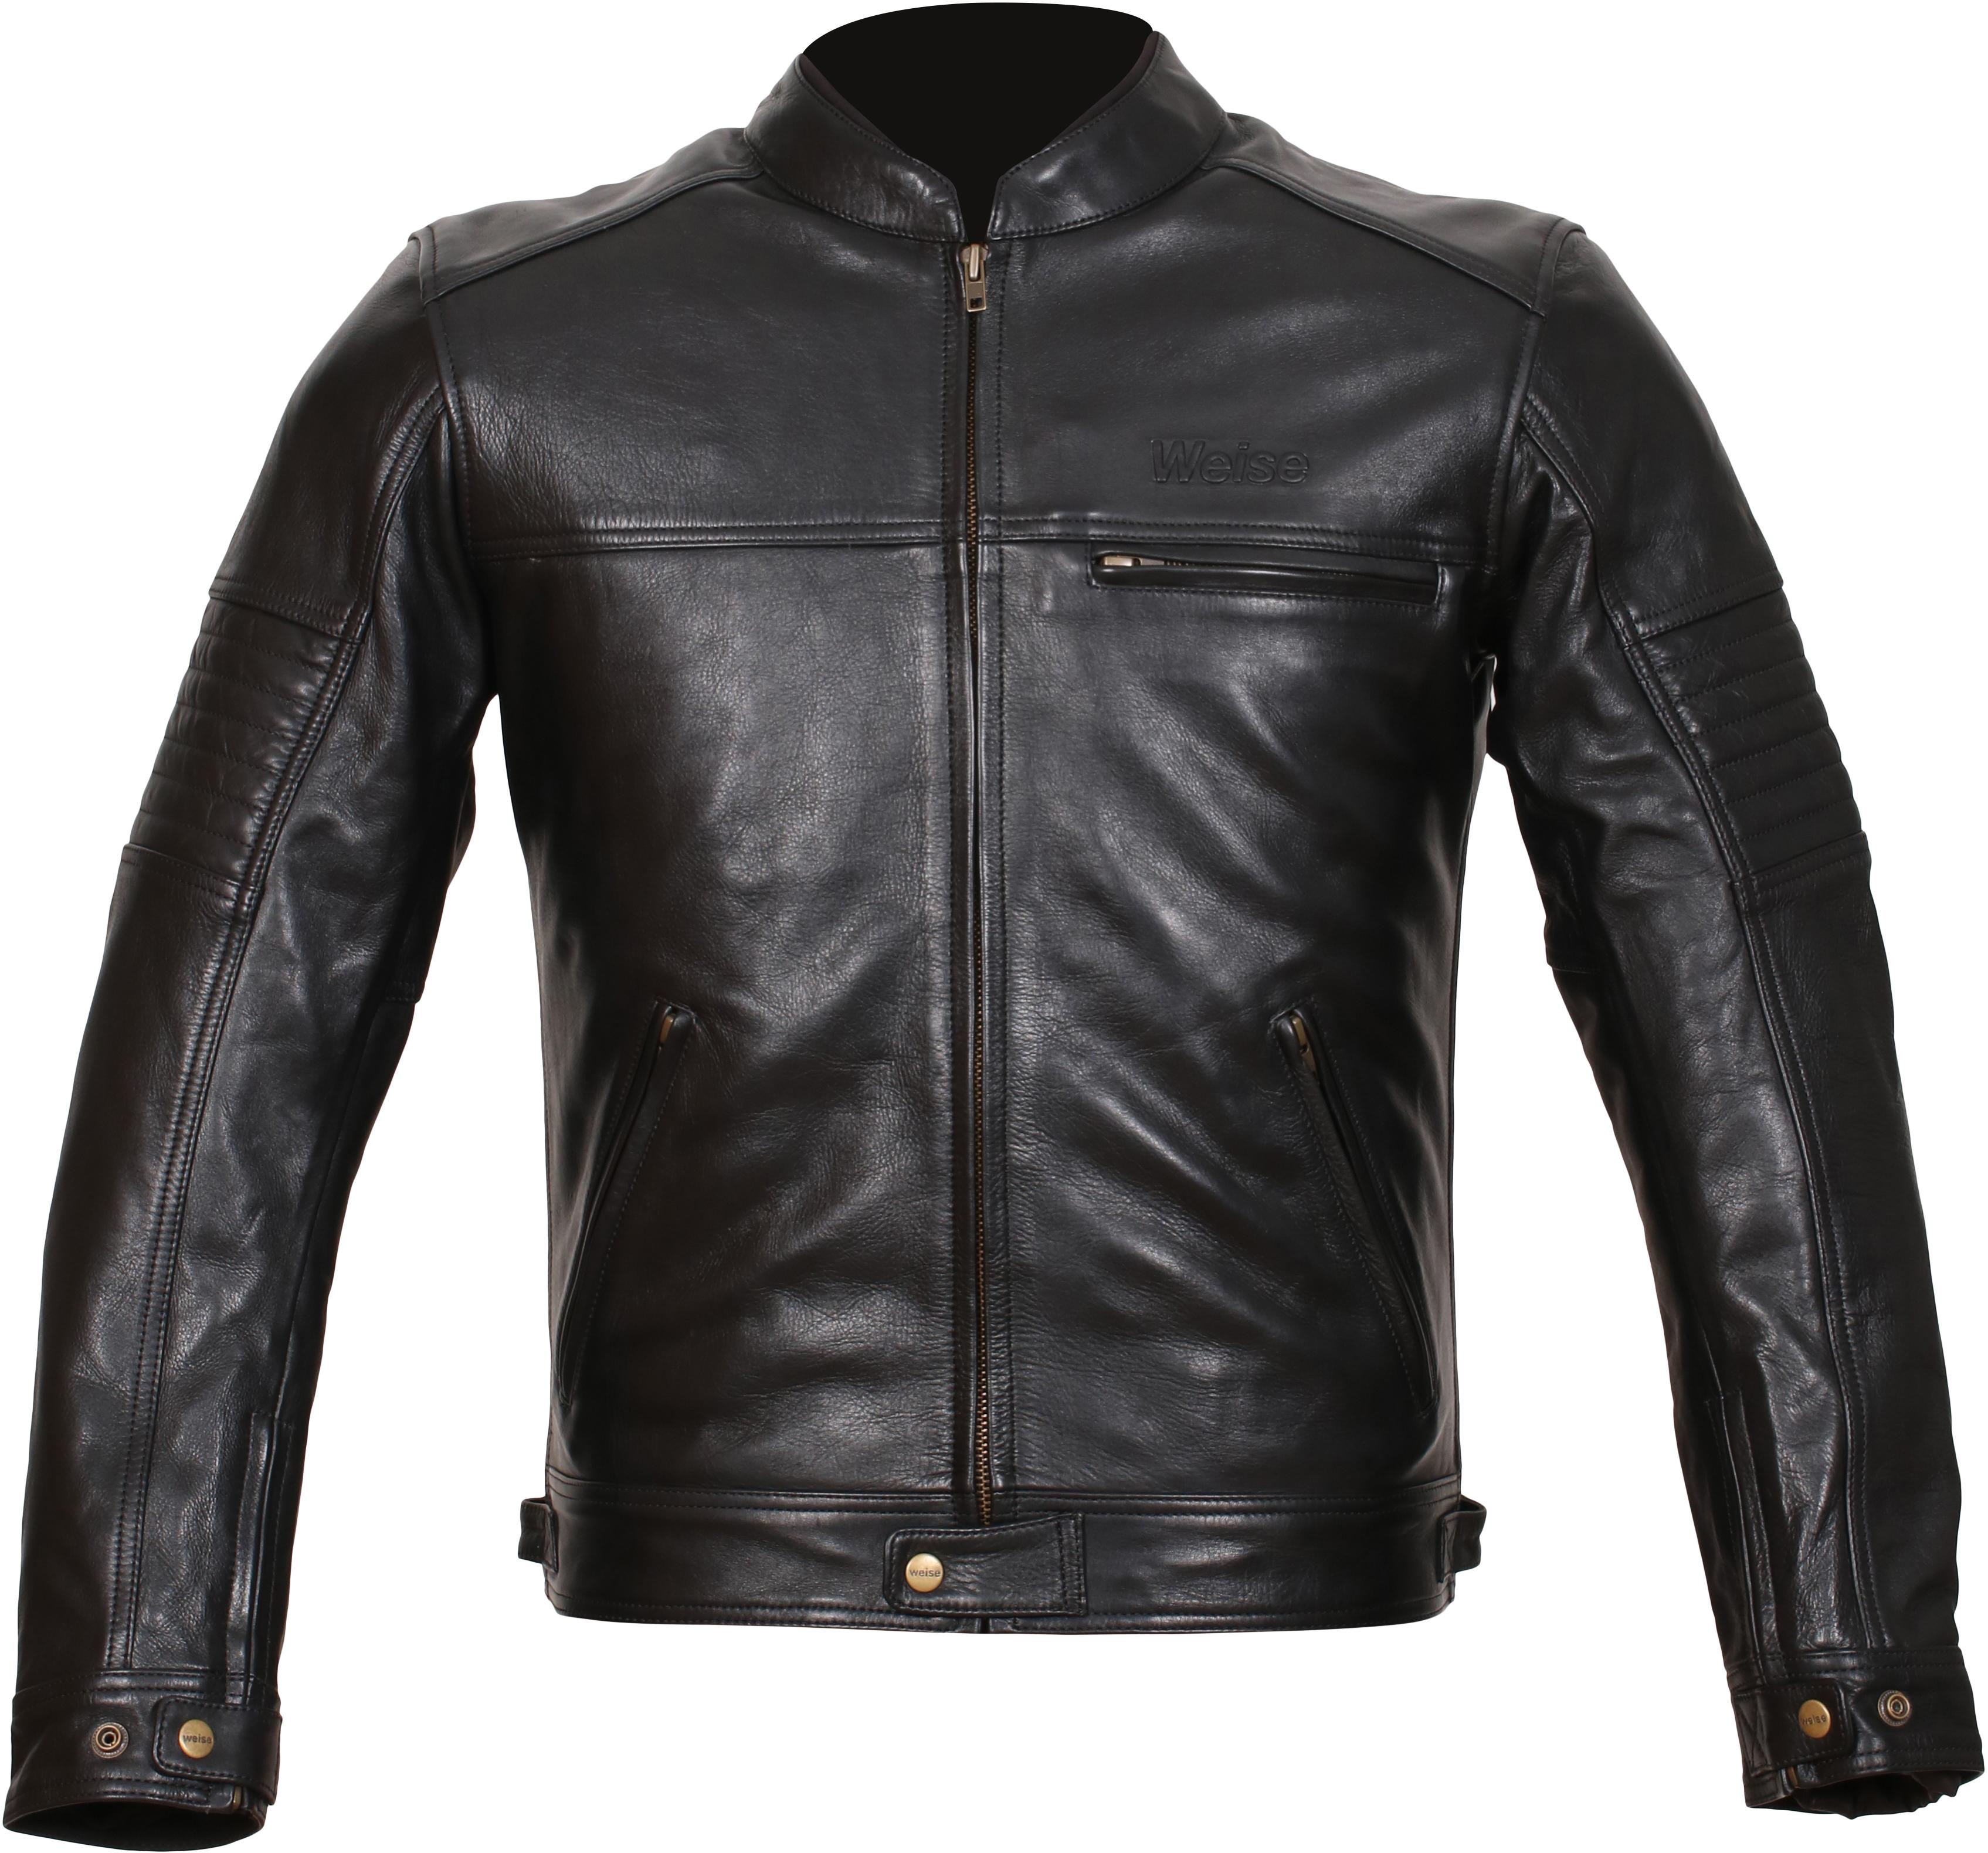 Weise Cabot Leather Motorcycle Jacket - Black, 46